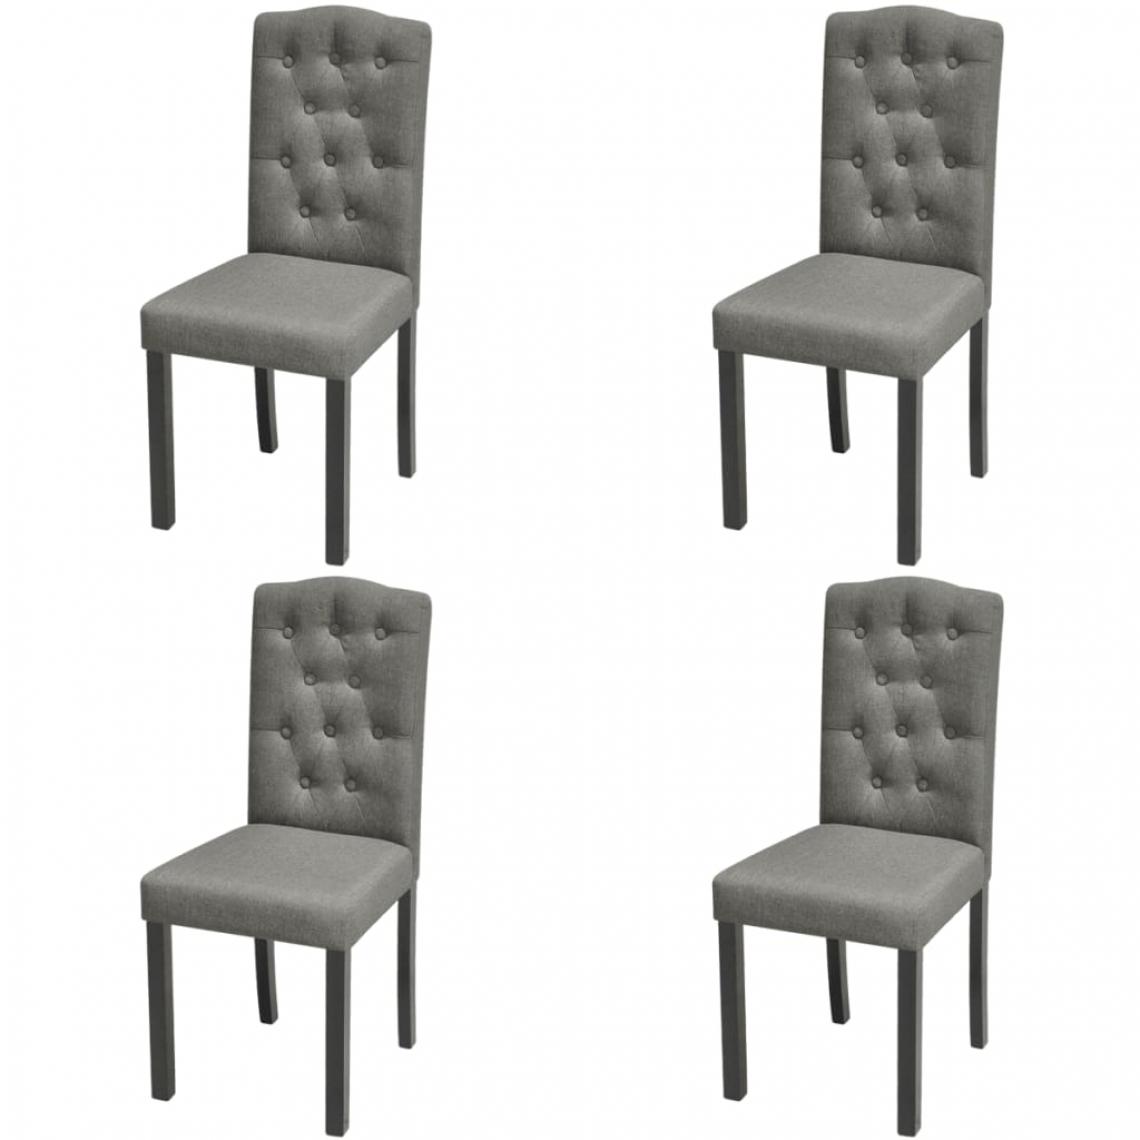 Decoshop26 - Lot de 4 chaises de salle à manger cuisine dossier capitonné pieds en bois gris tissu CDS021610 - Chaises